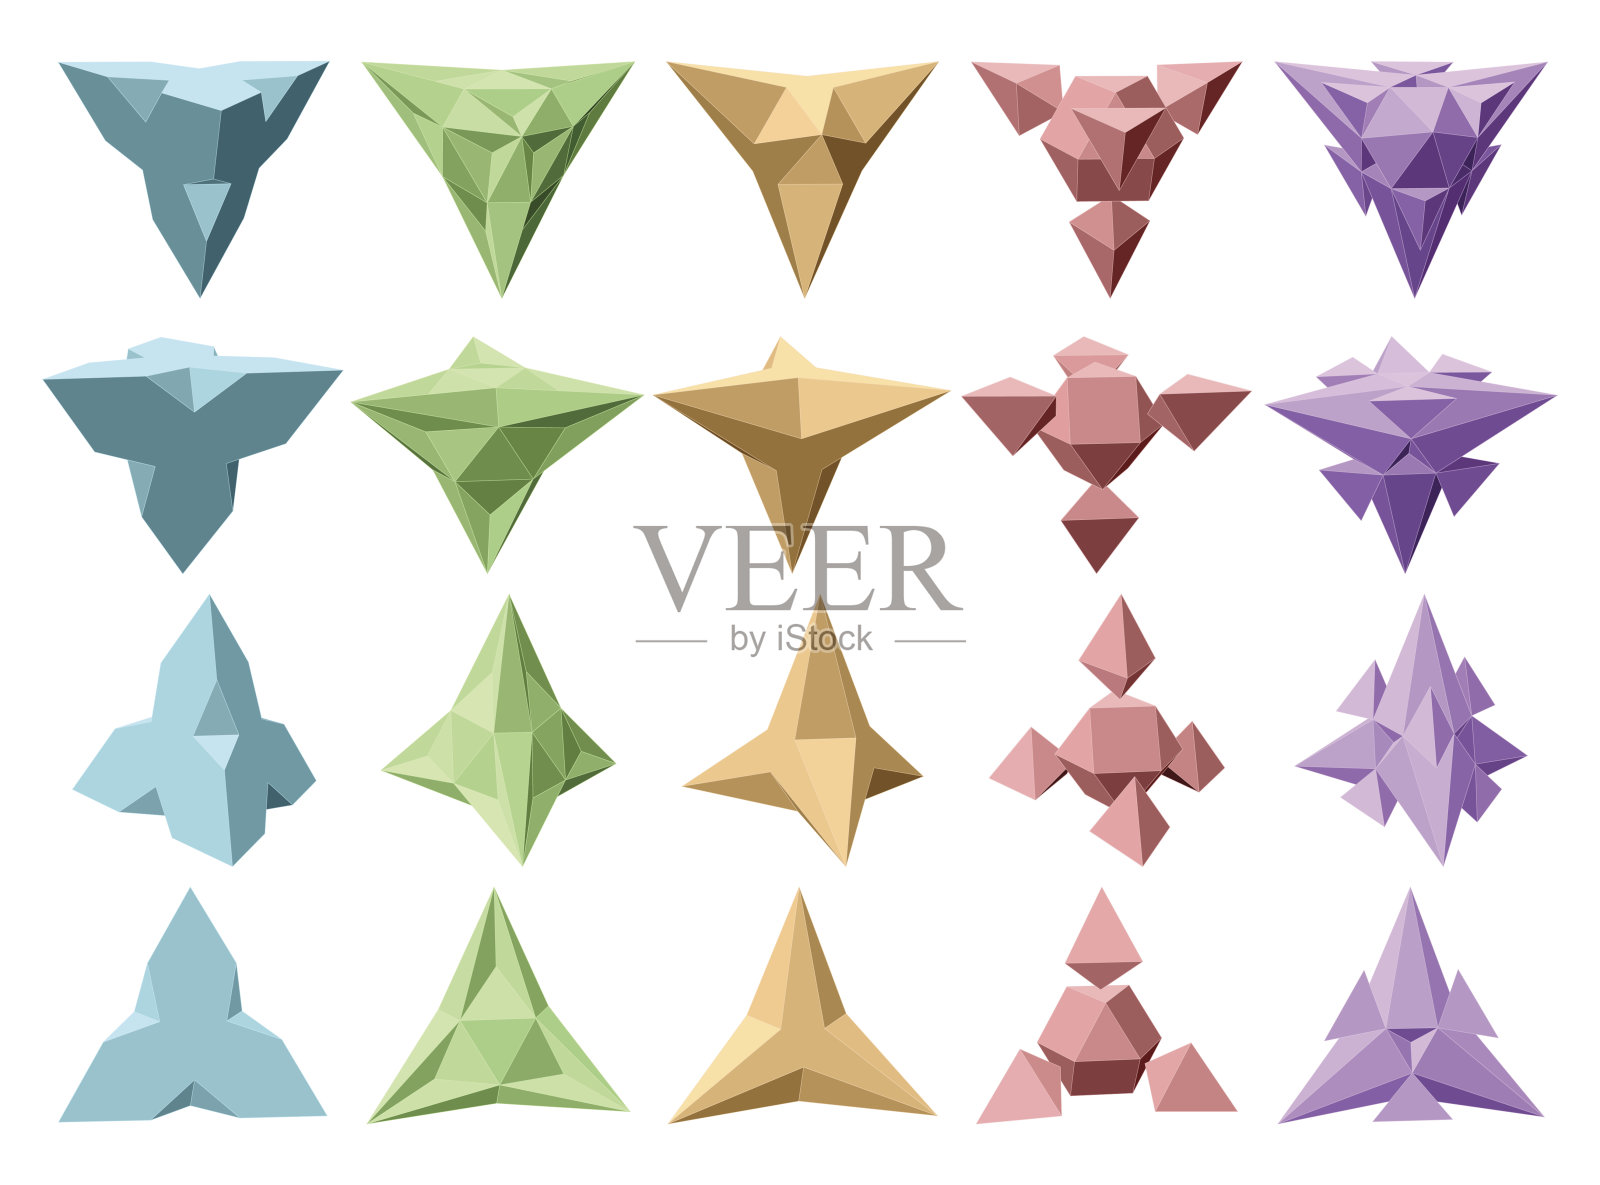 基于四面体的矢量复杂几何形状集。五种形状。四种透视图类型插画图片素材